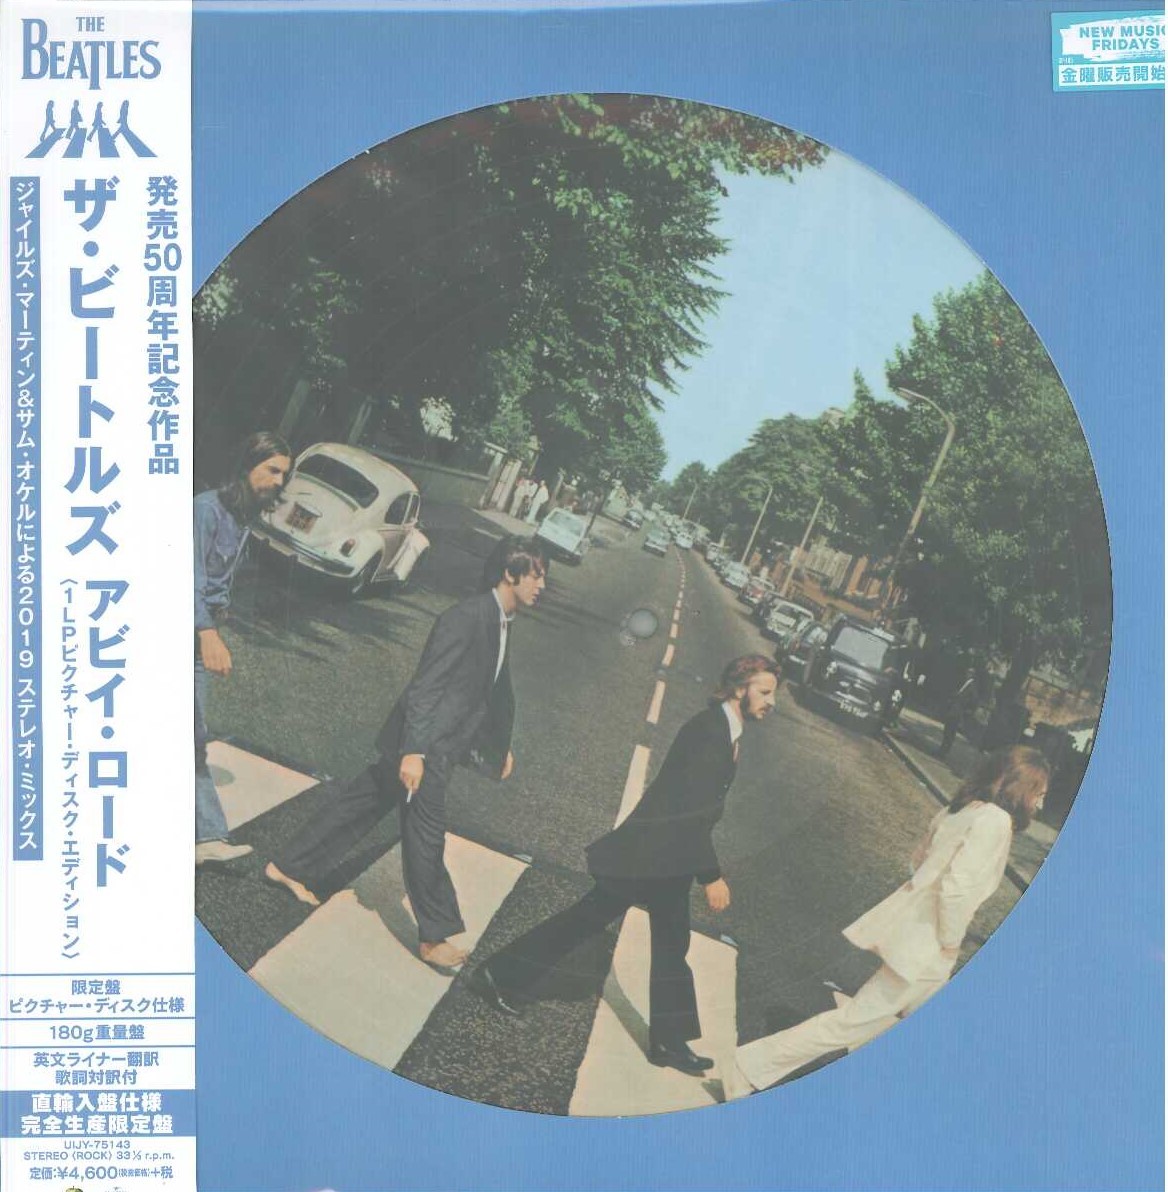 ヤフオク! 180g日本語翻訳つき/Abbey Road 50周年記念スー...